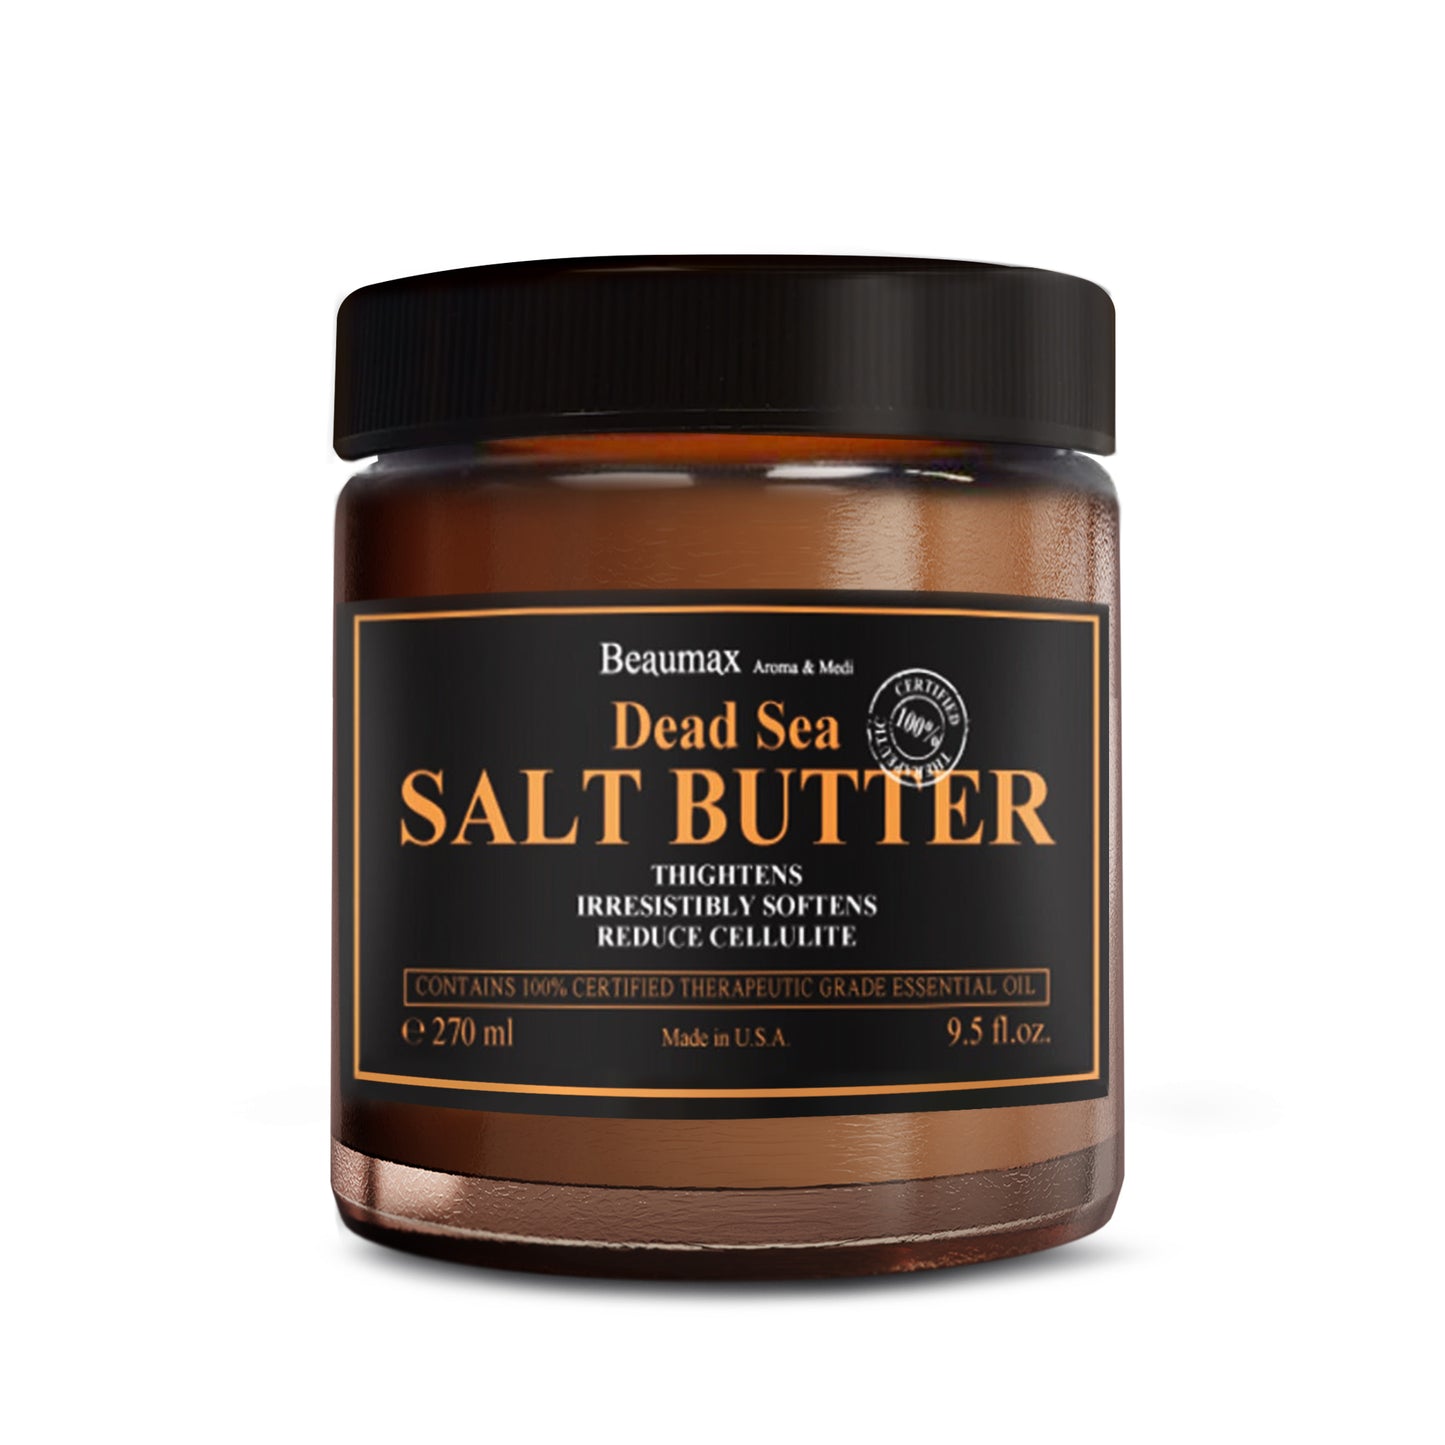 Dead Sea Salt Butter 270ml/9.5fl.oz.